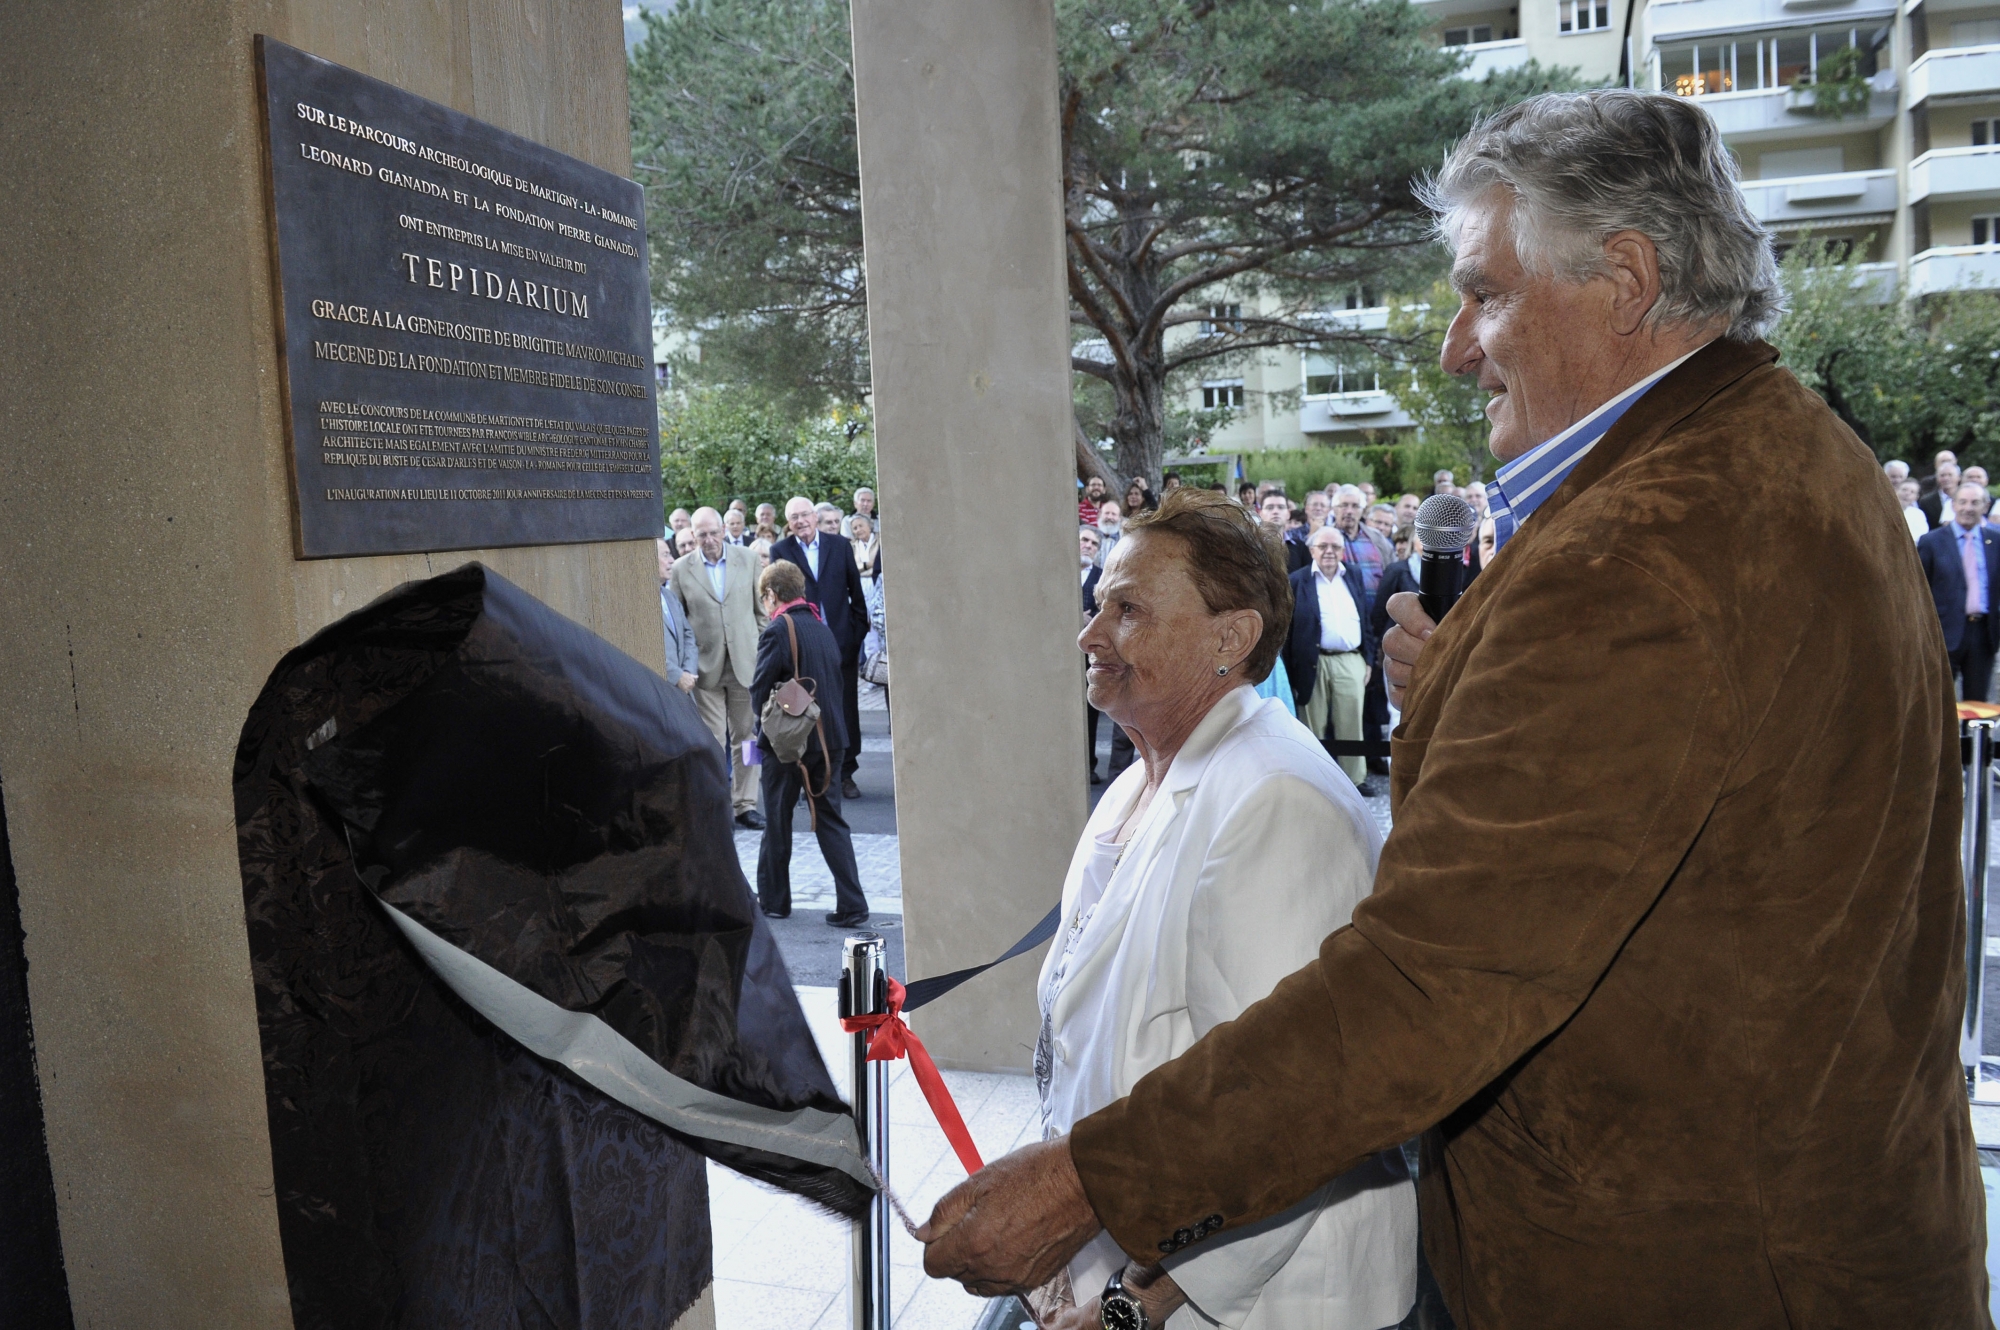 Le 11 octobre 2011, Brigitte Mavromichalis et Léonard Gianadda inauguraient le Tepidarium de Martigny, remis en valeur grâce à la générosité de la mécène.